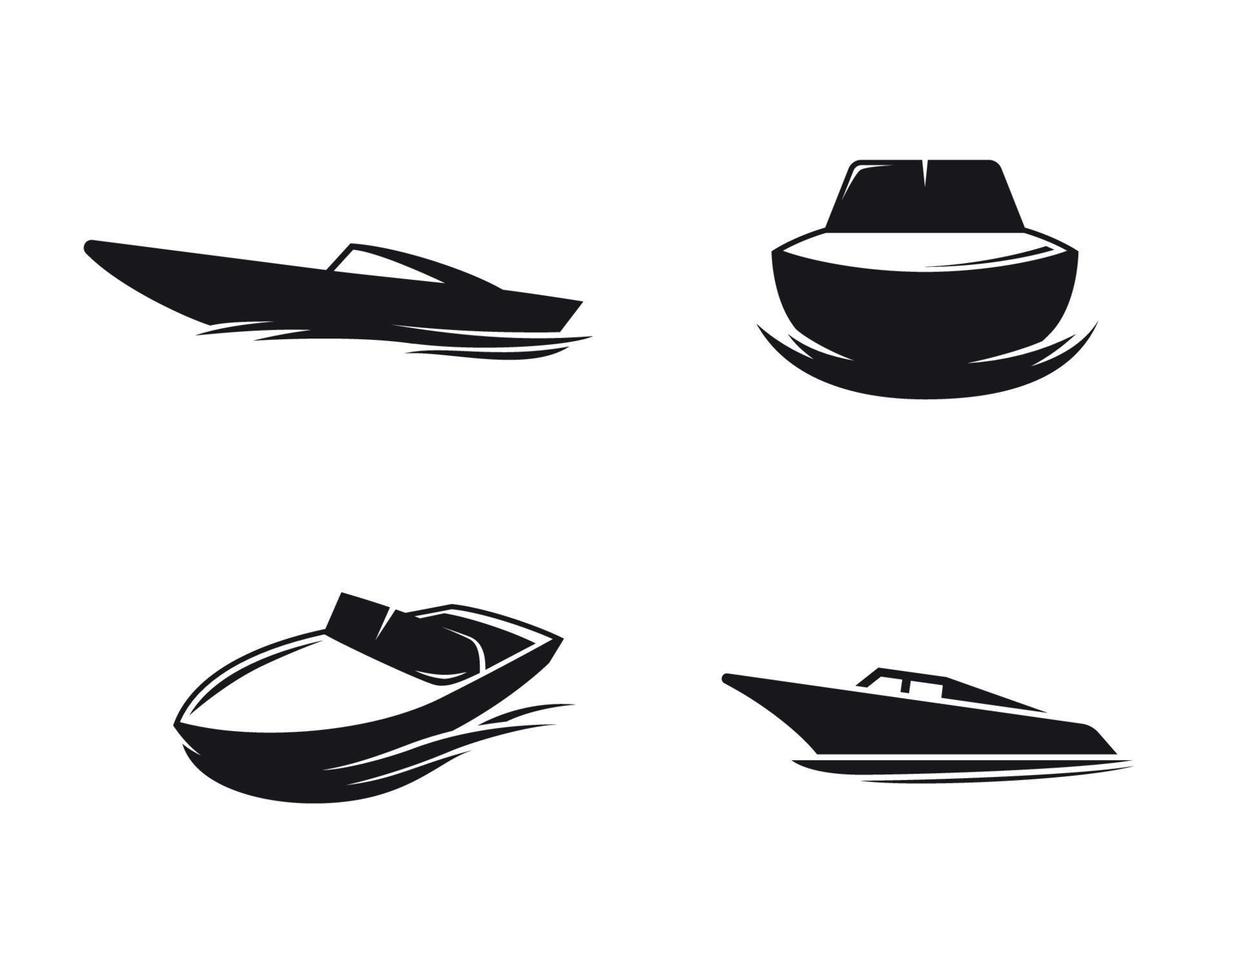 Bootssymbole gesetzt. schwarz auf weißem Grund vektor